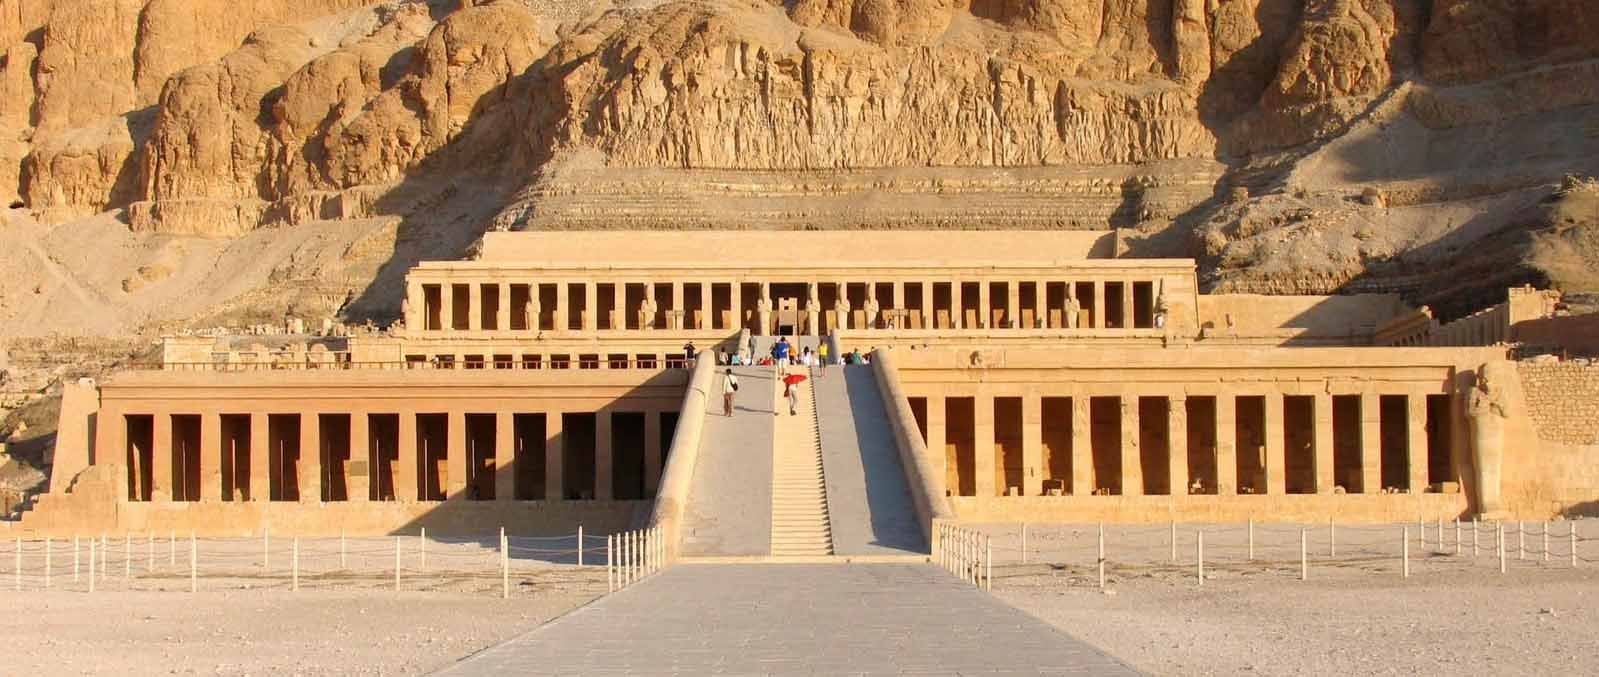 Templo de hatshepsut (Deir El Bahari) en la ciudad de Luxor